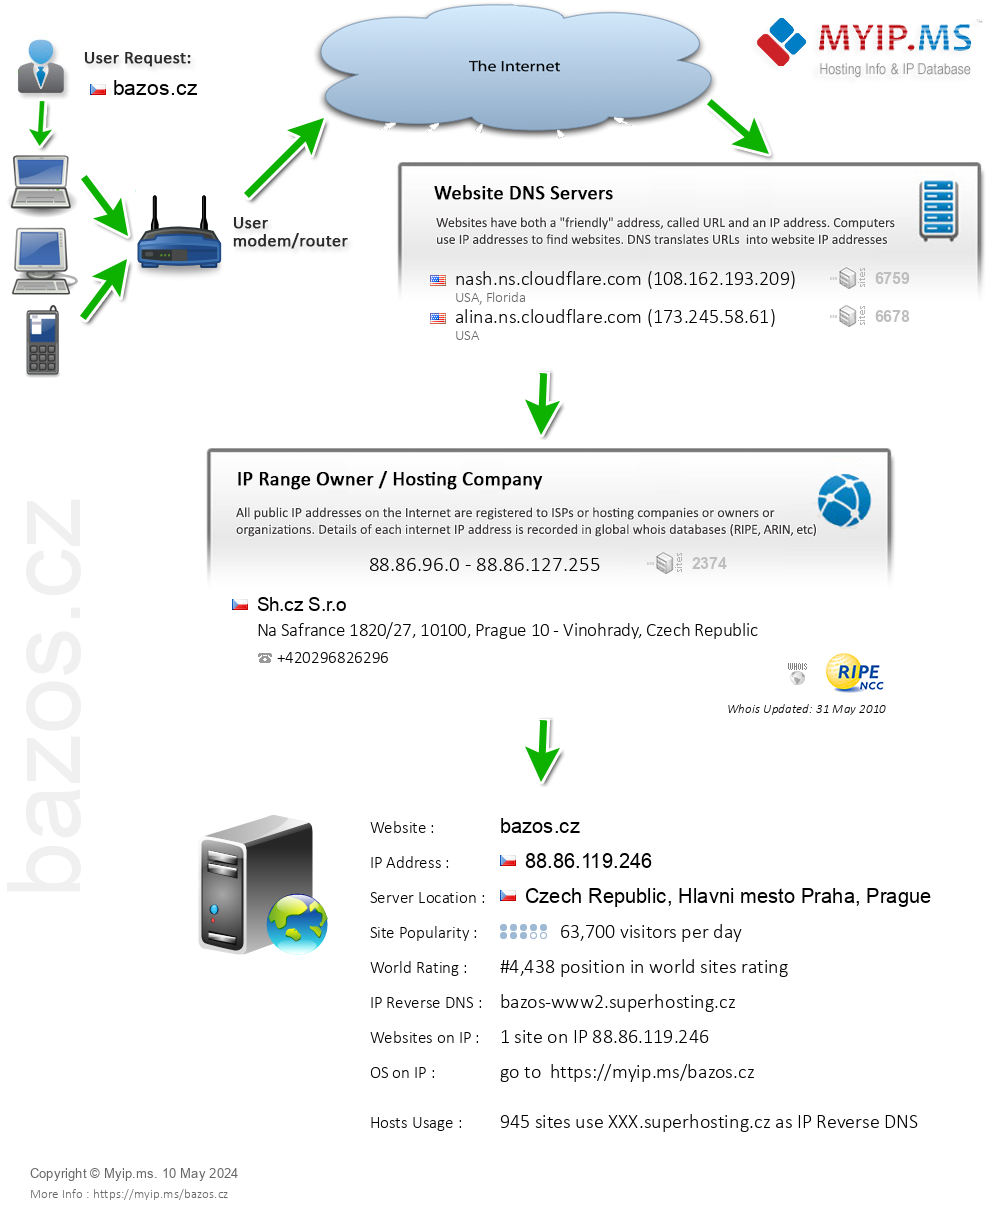 Bazos.cz - Website Hosting Visual IP Diagram